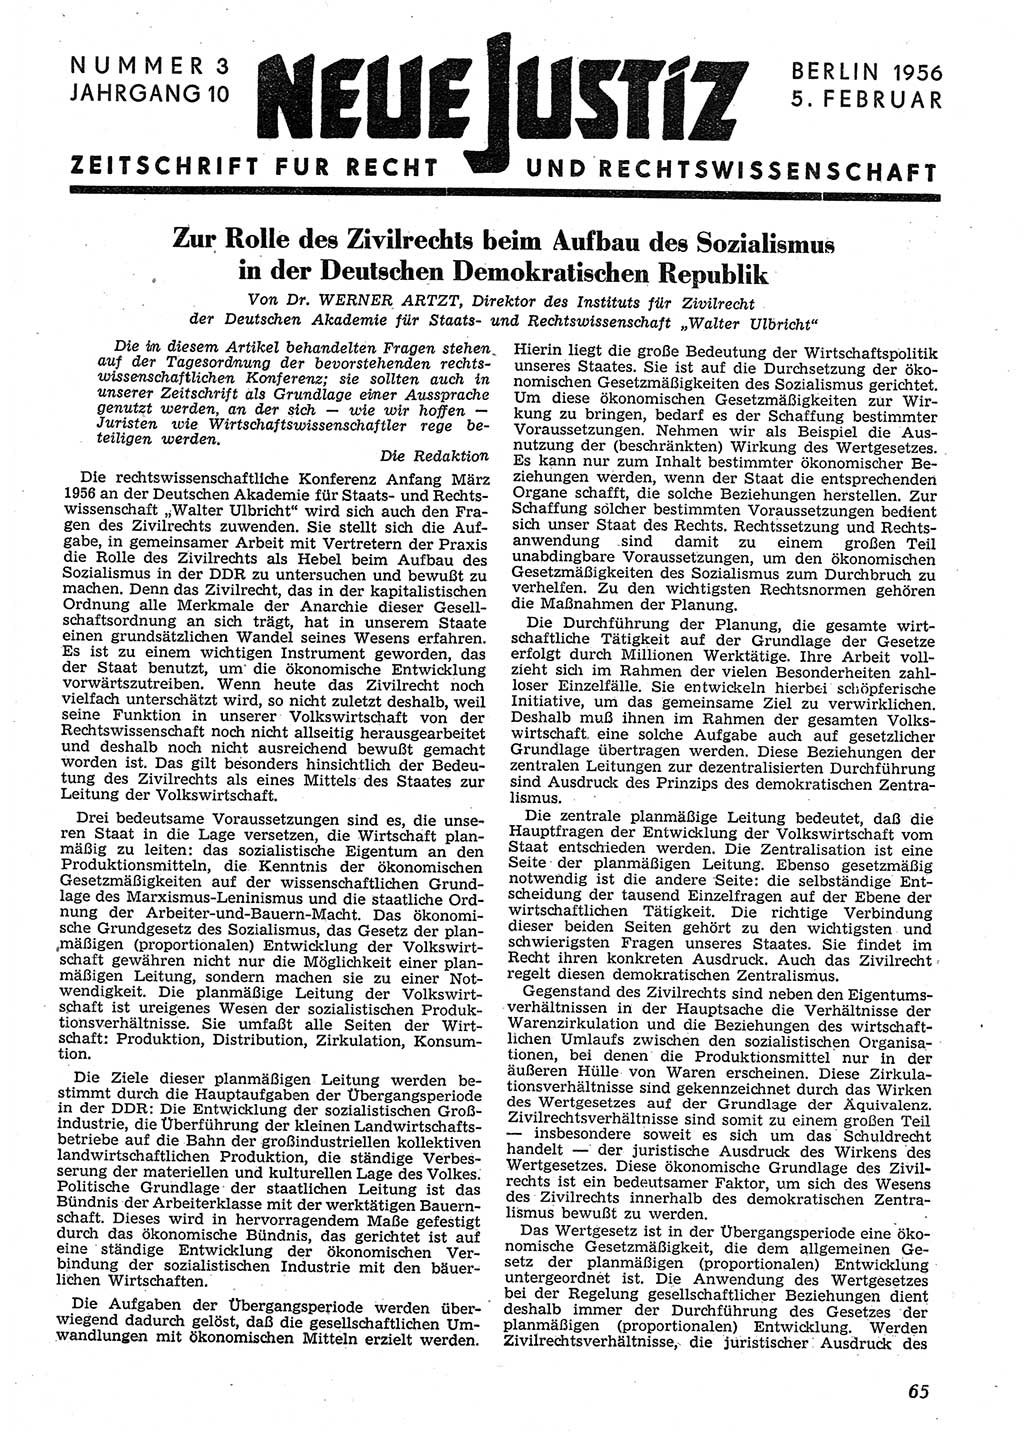 Neue Justiz (NJ), Zeitschrift für Recht und Rechtswissenschaft [Deutsche Demokratische Republik (DDR)], 10. Jahrgang 1956, Seite 65 (NJ DDR 1956, S. 65)